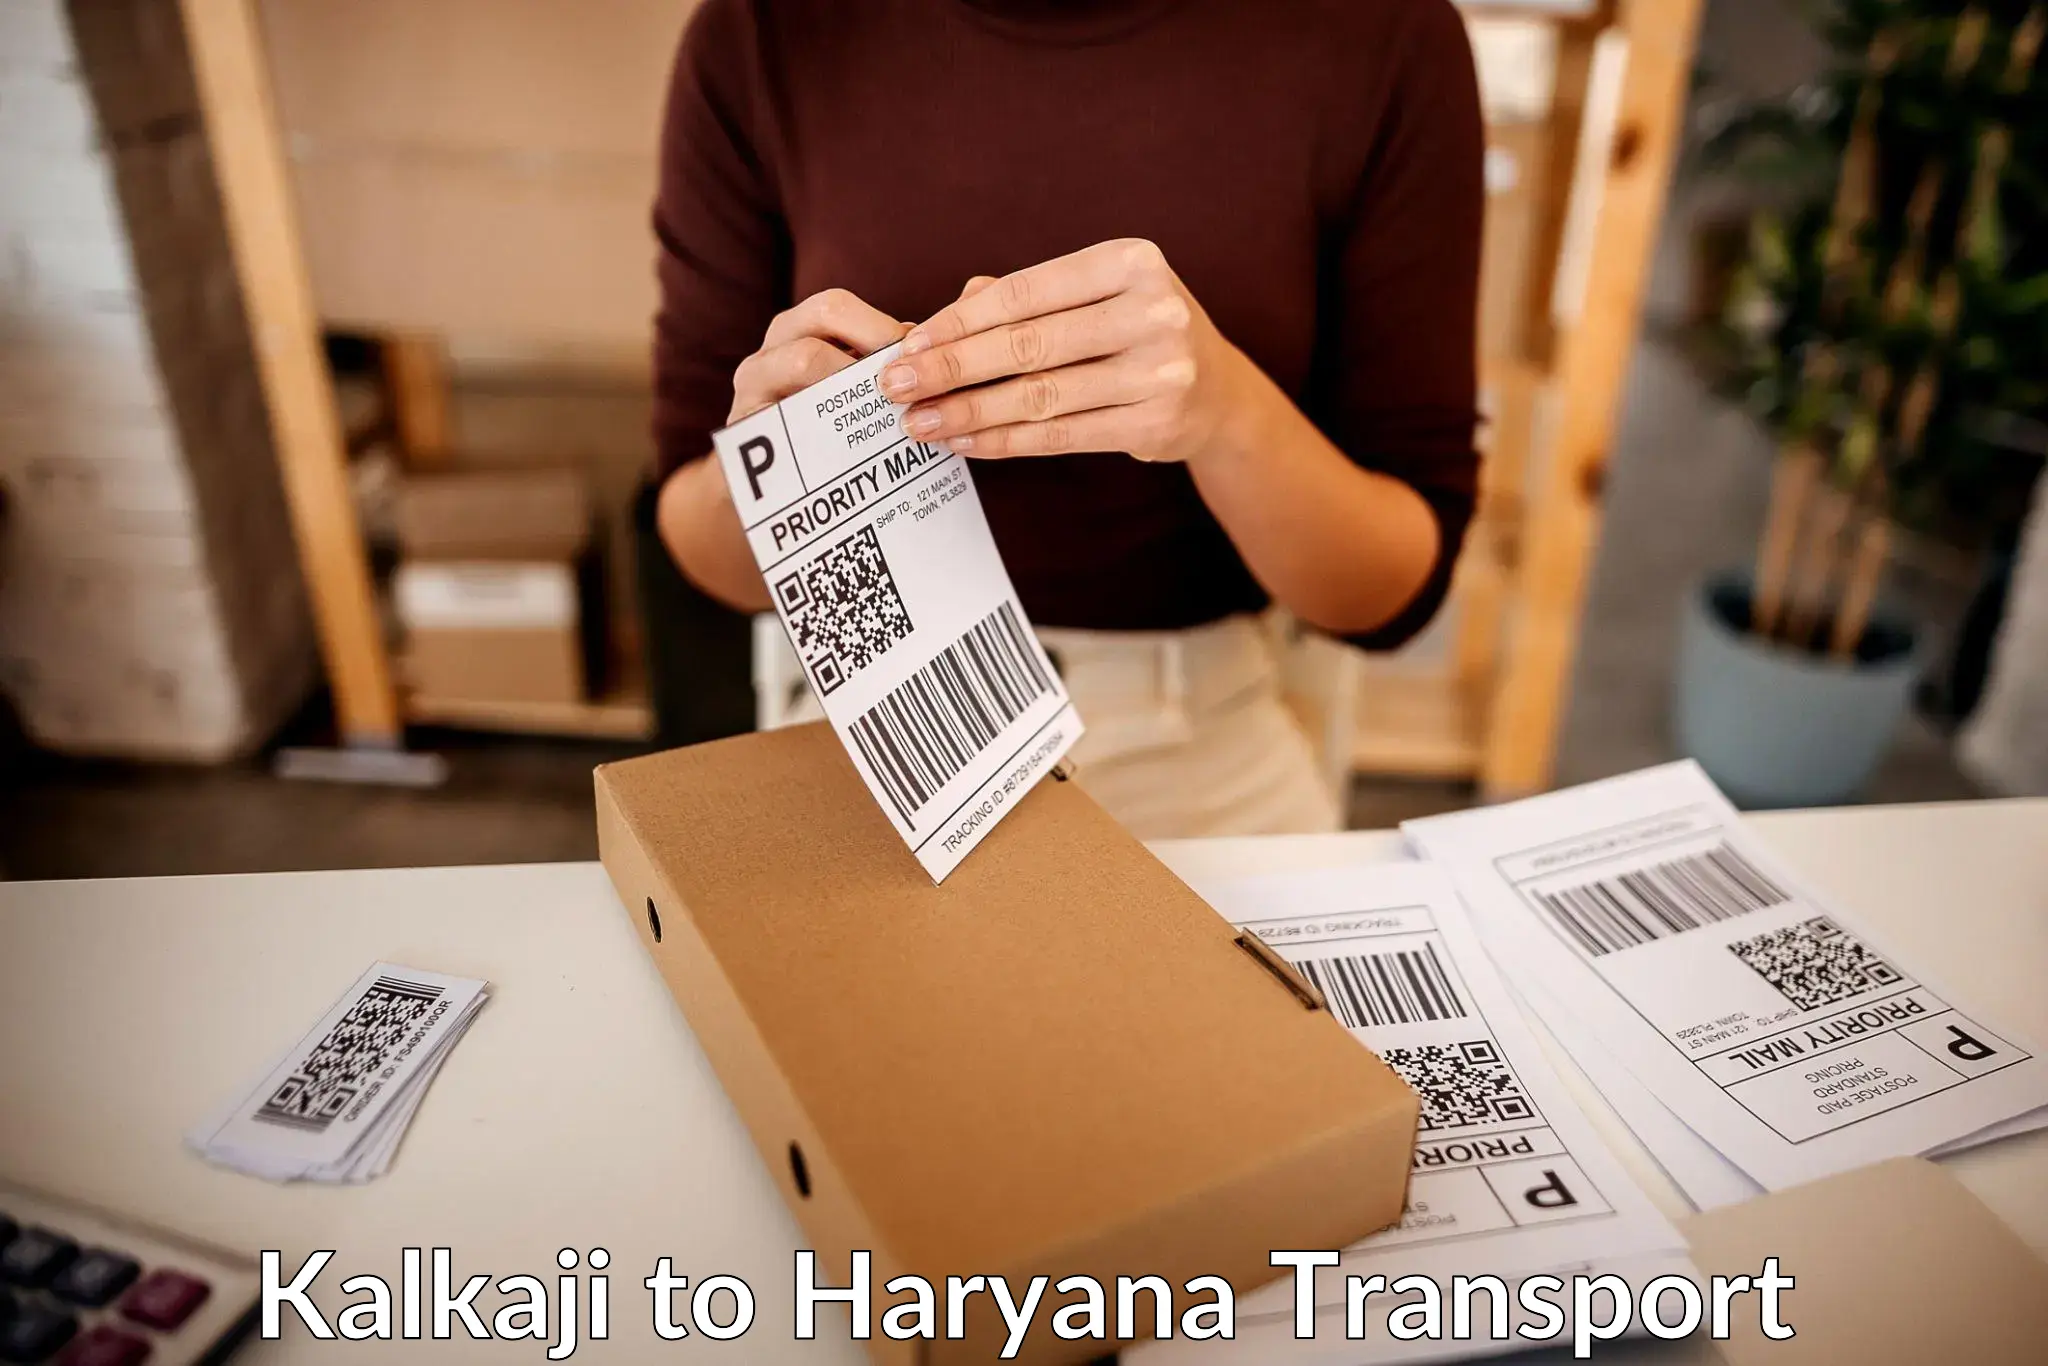 Cargo transport services Kalkaji to Bilaspur Haryana